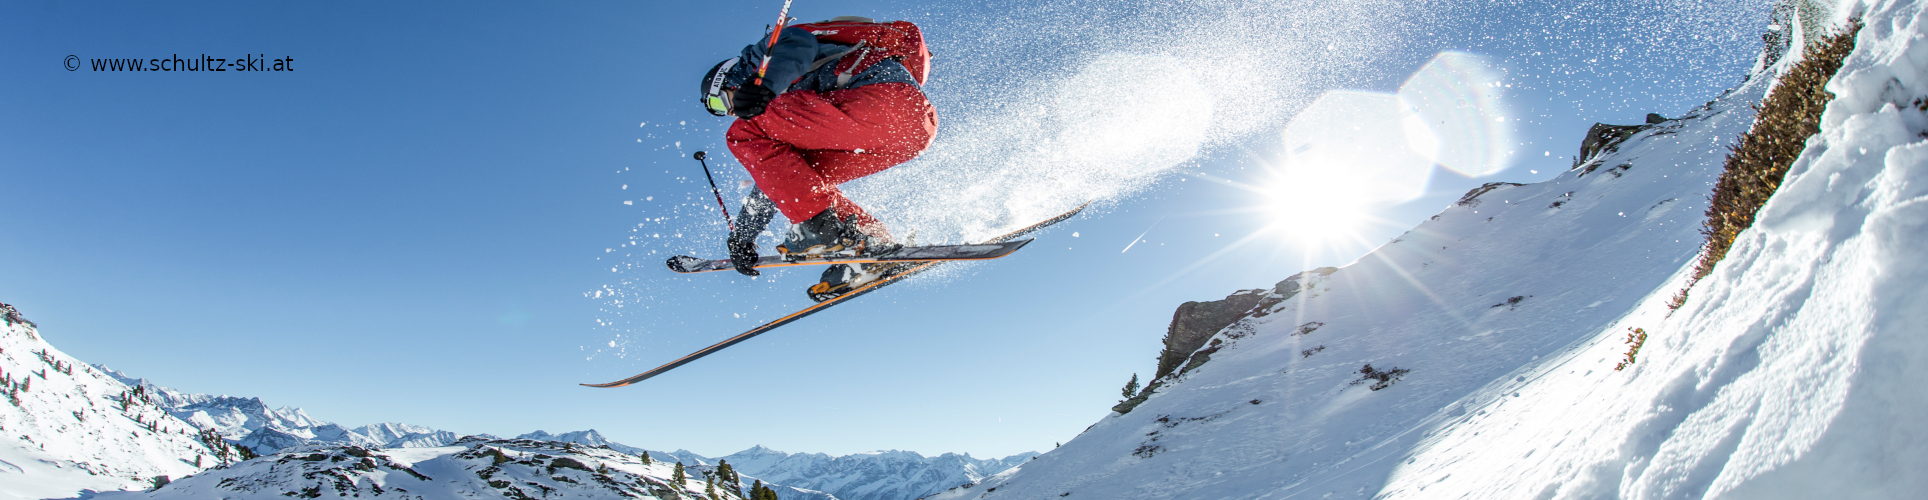 ZILLERTAL – verlängertes Skiwochenende mit 4 Skitagen – SkiSafari – Mayrhofen, Kaltenbach, Zell am Ziller – ab Donnerstag früh 